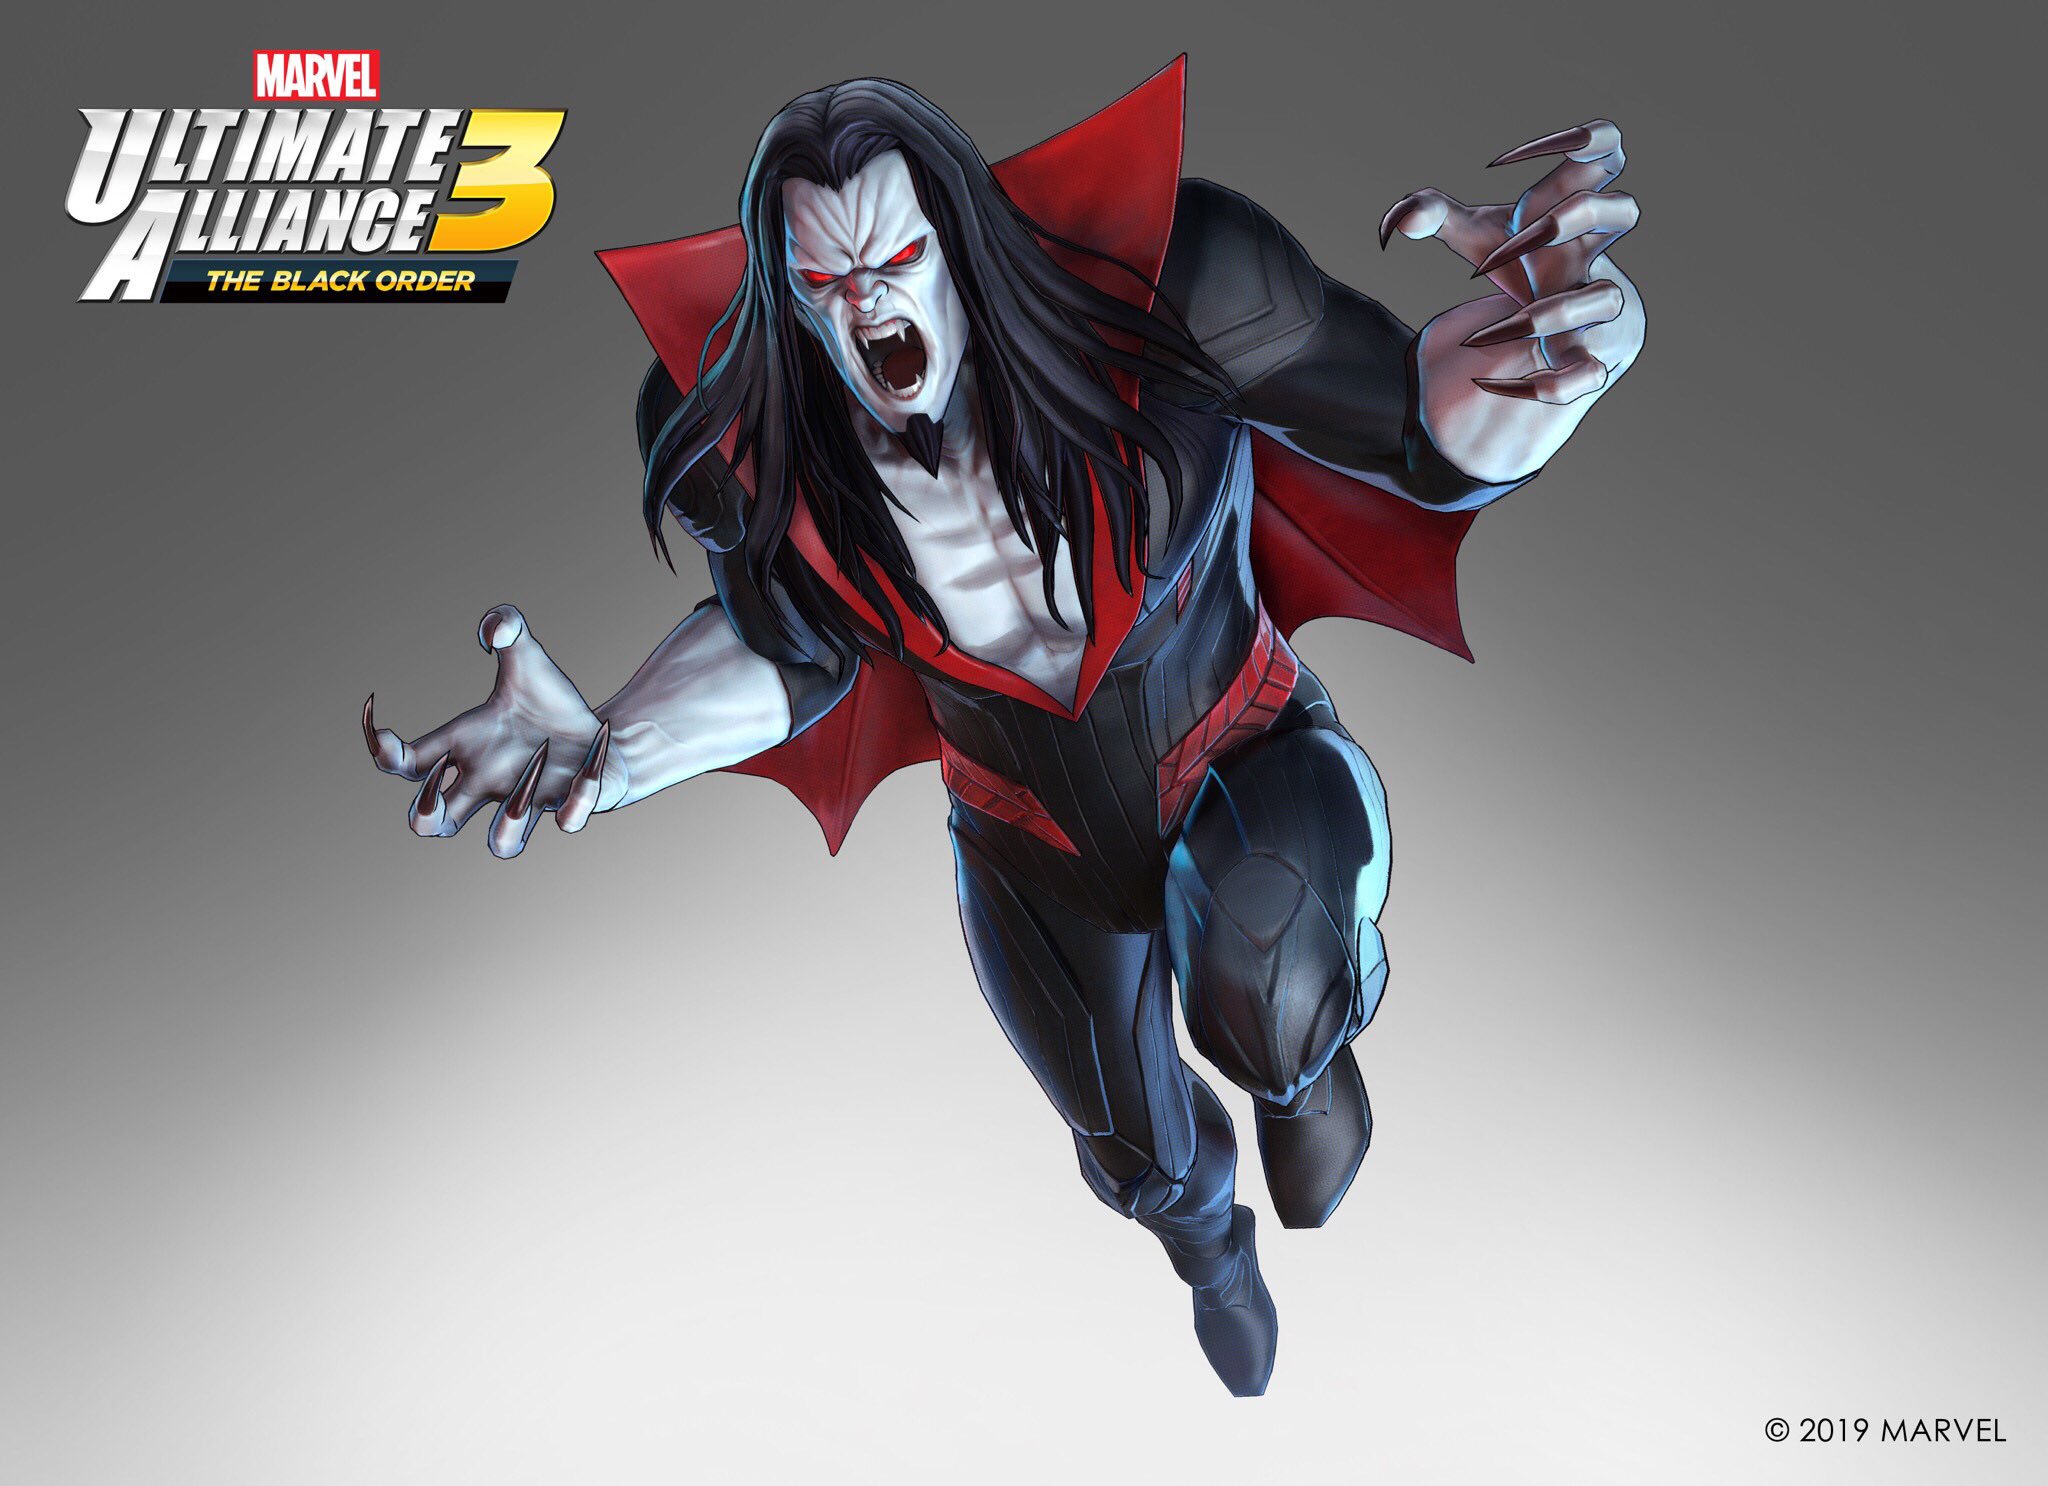 Morbius 2